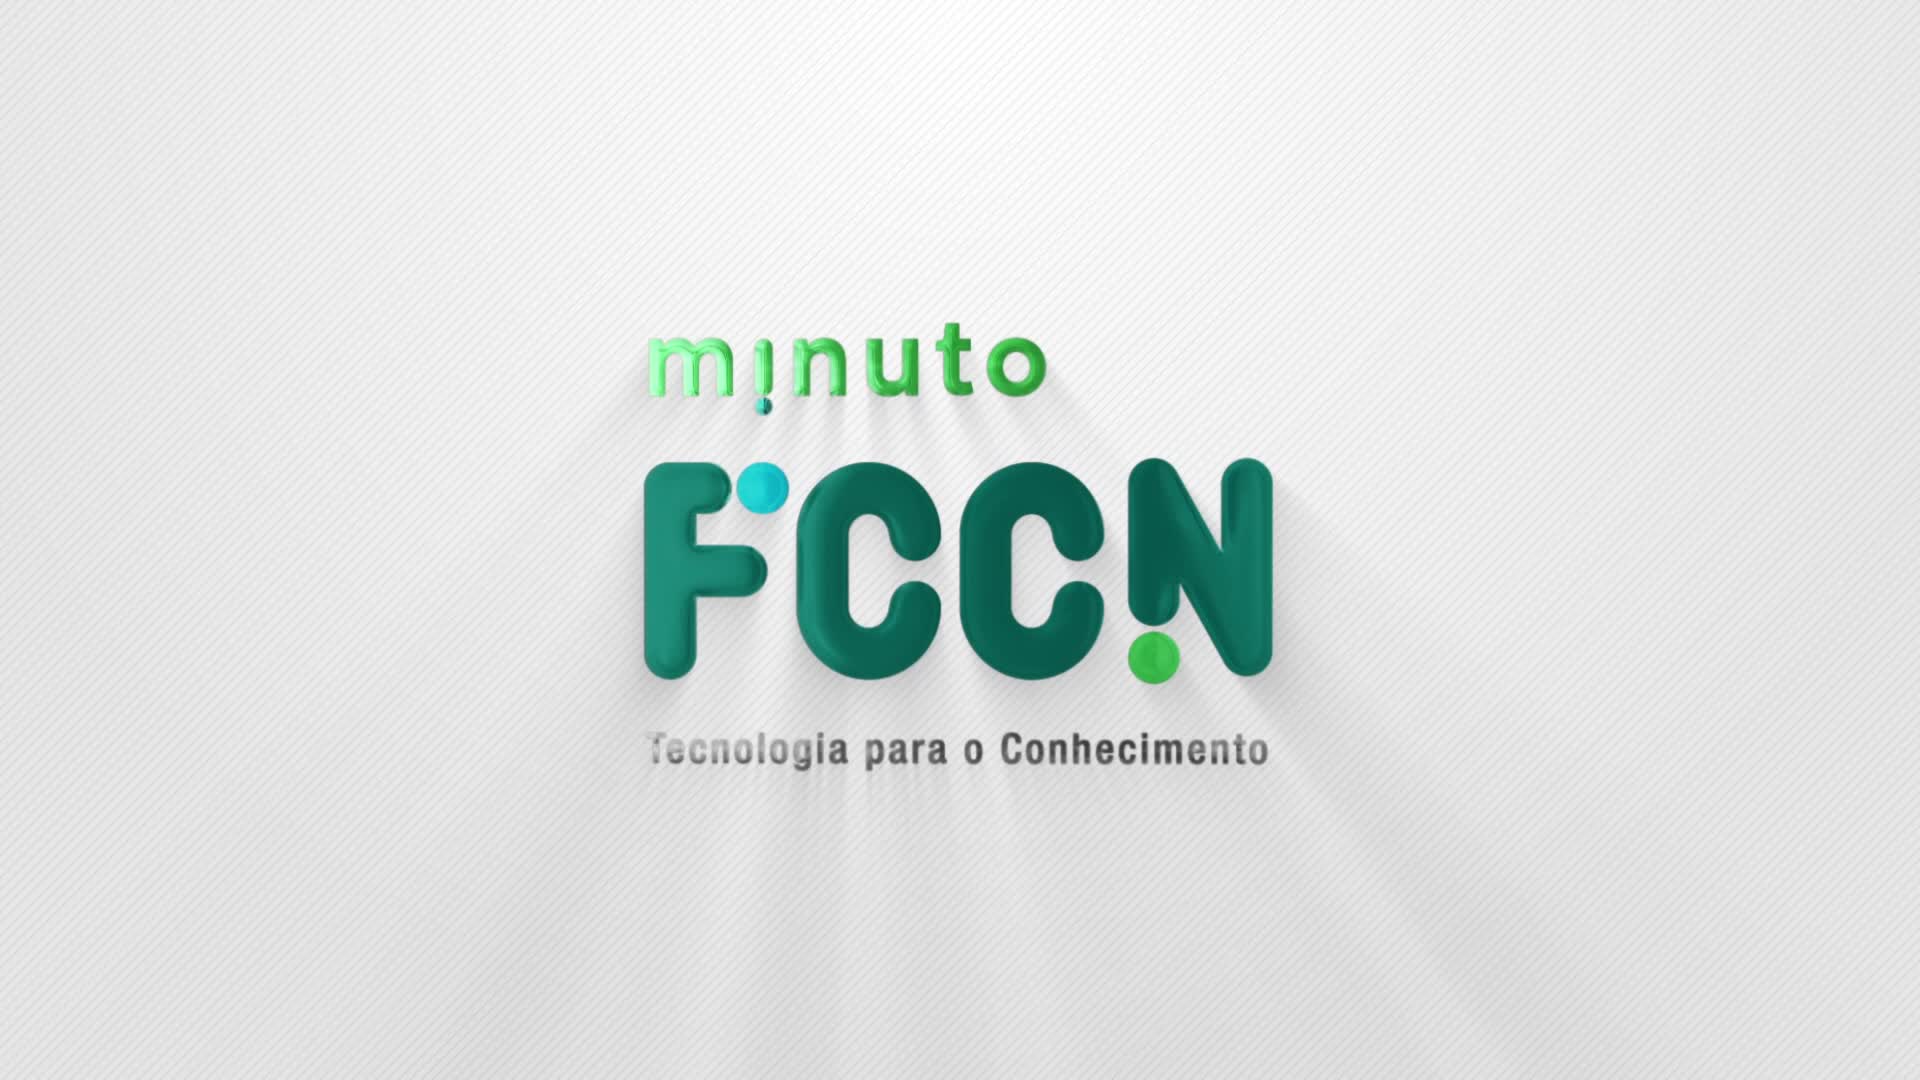  Minuto FCCN - Rede Nacional de Computação Avançada